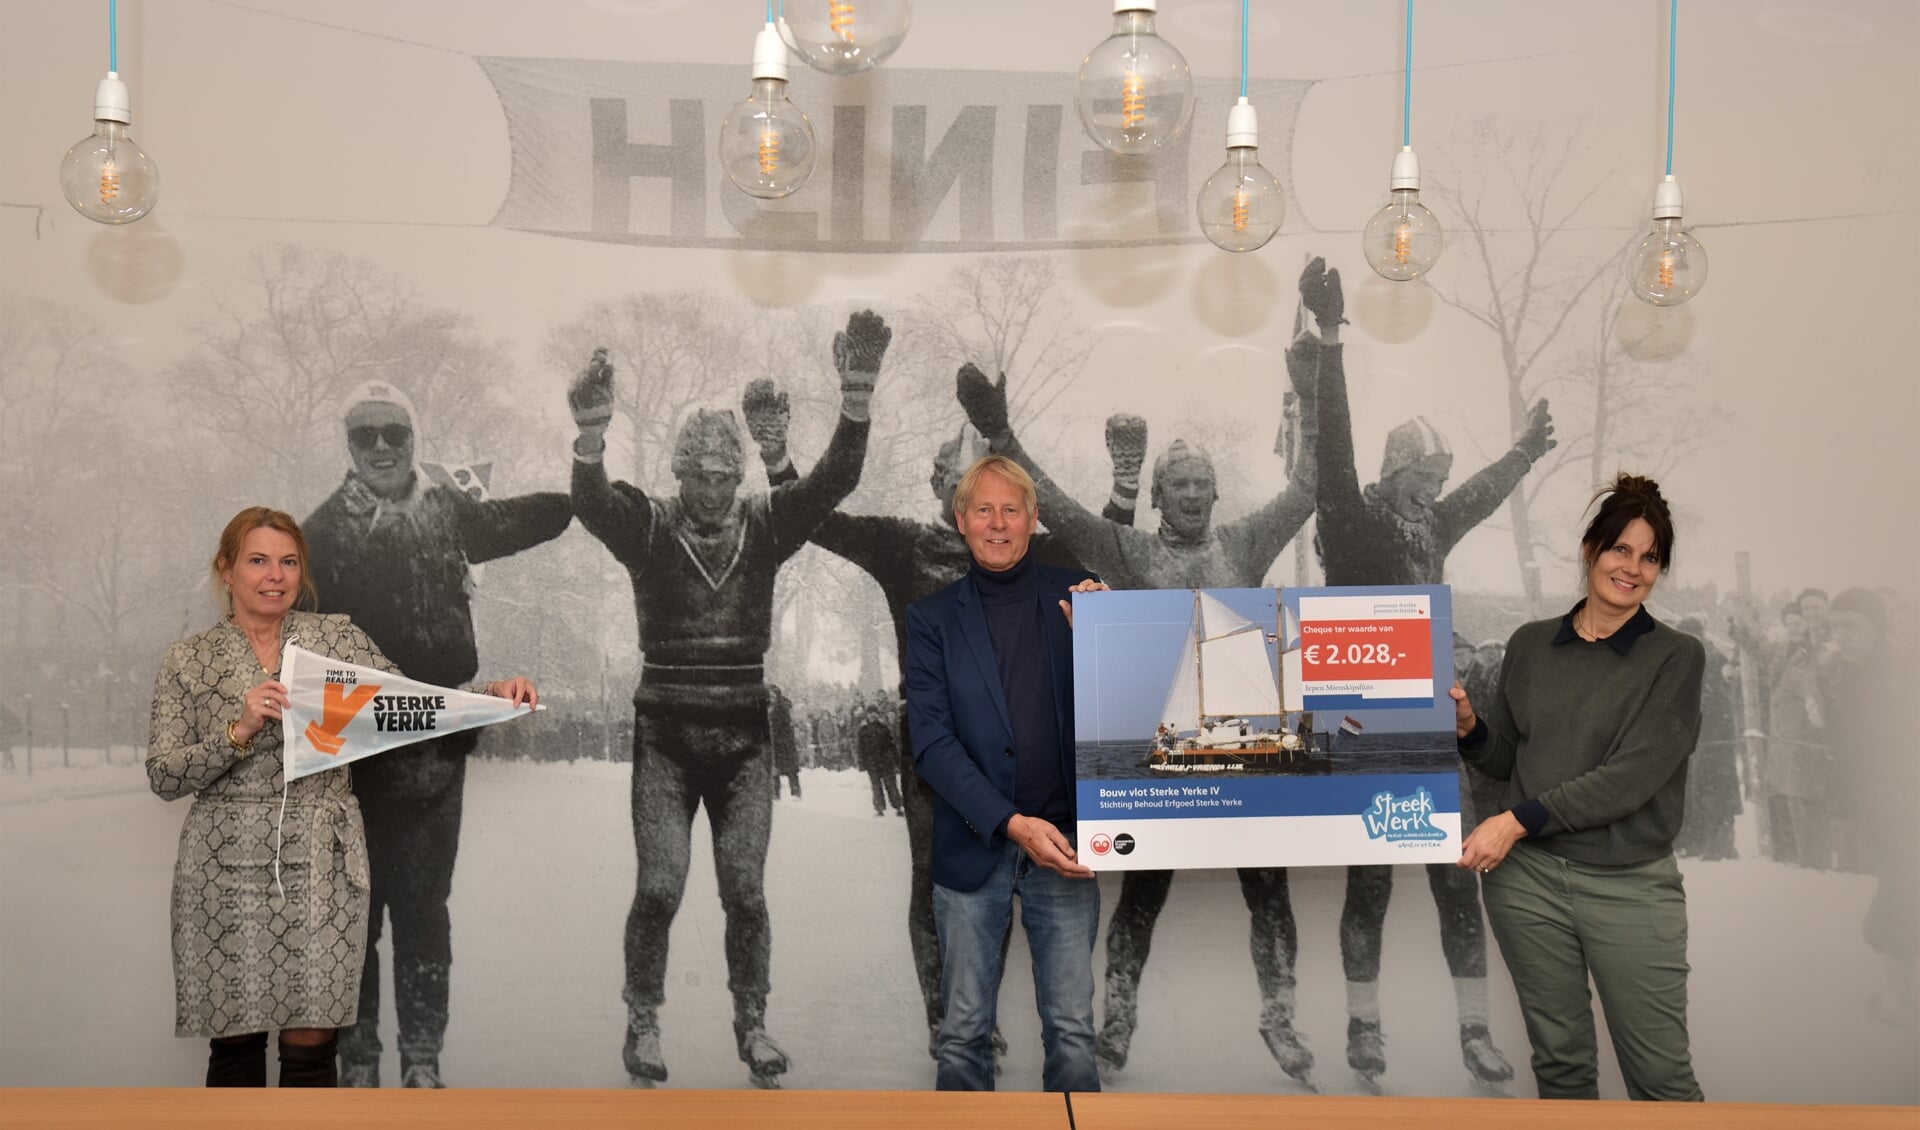 Bestuurdersleden Margreet Themmen en Wilfred de Jong ontvangen de cheque van 2028 euro uit handen van gedeputeerde Avine Fokkens-Kelder.